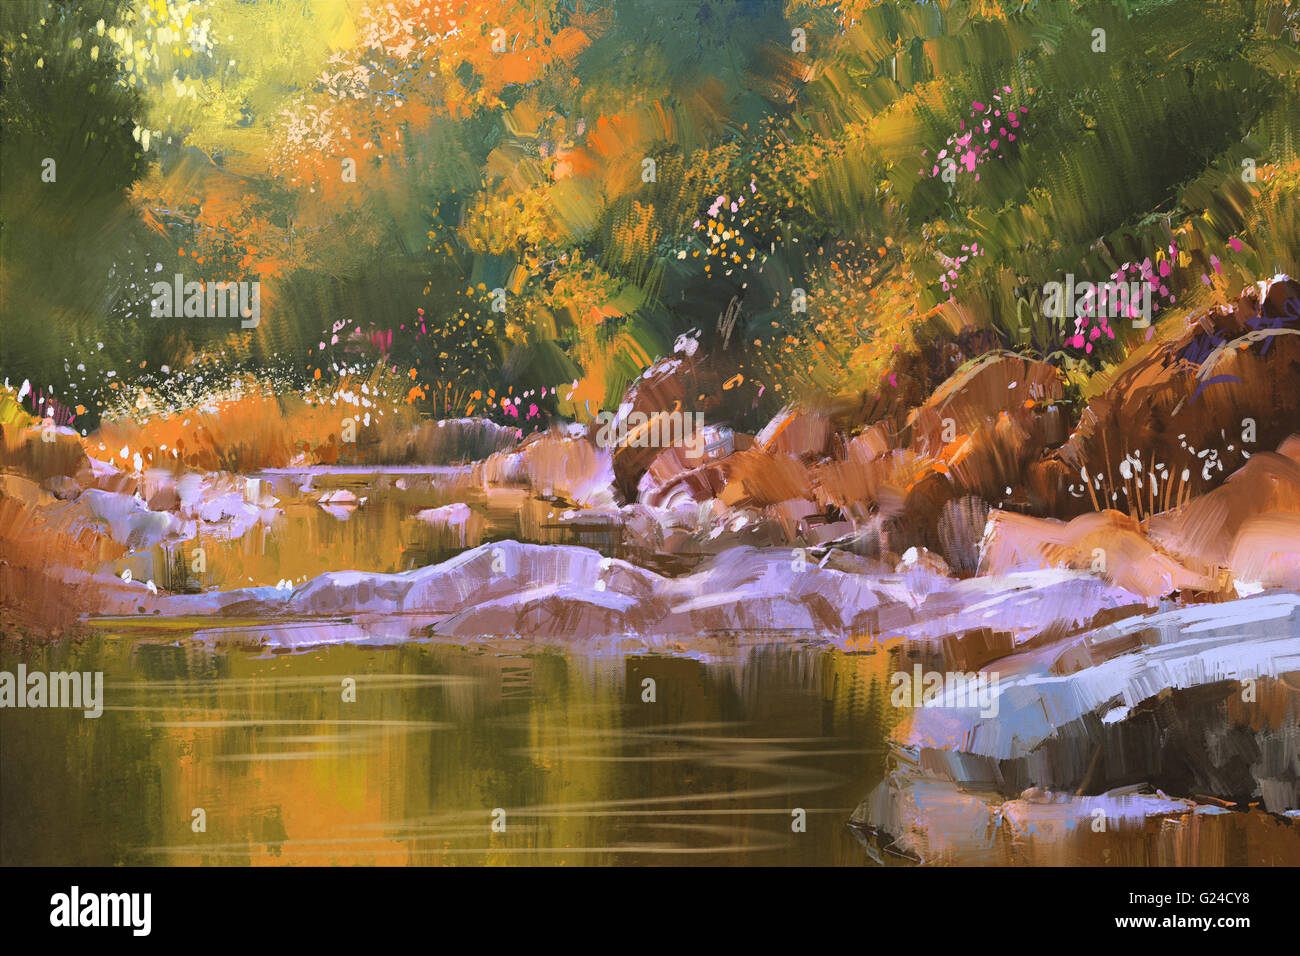 Les lignes de la rivière avec des pierres dans la belle forêt,nature,illustration peinture Banque D'Images